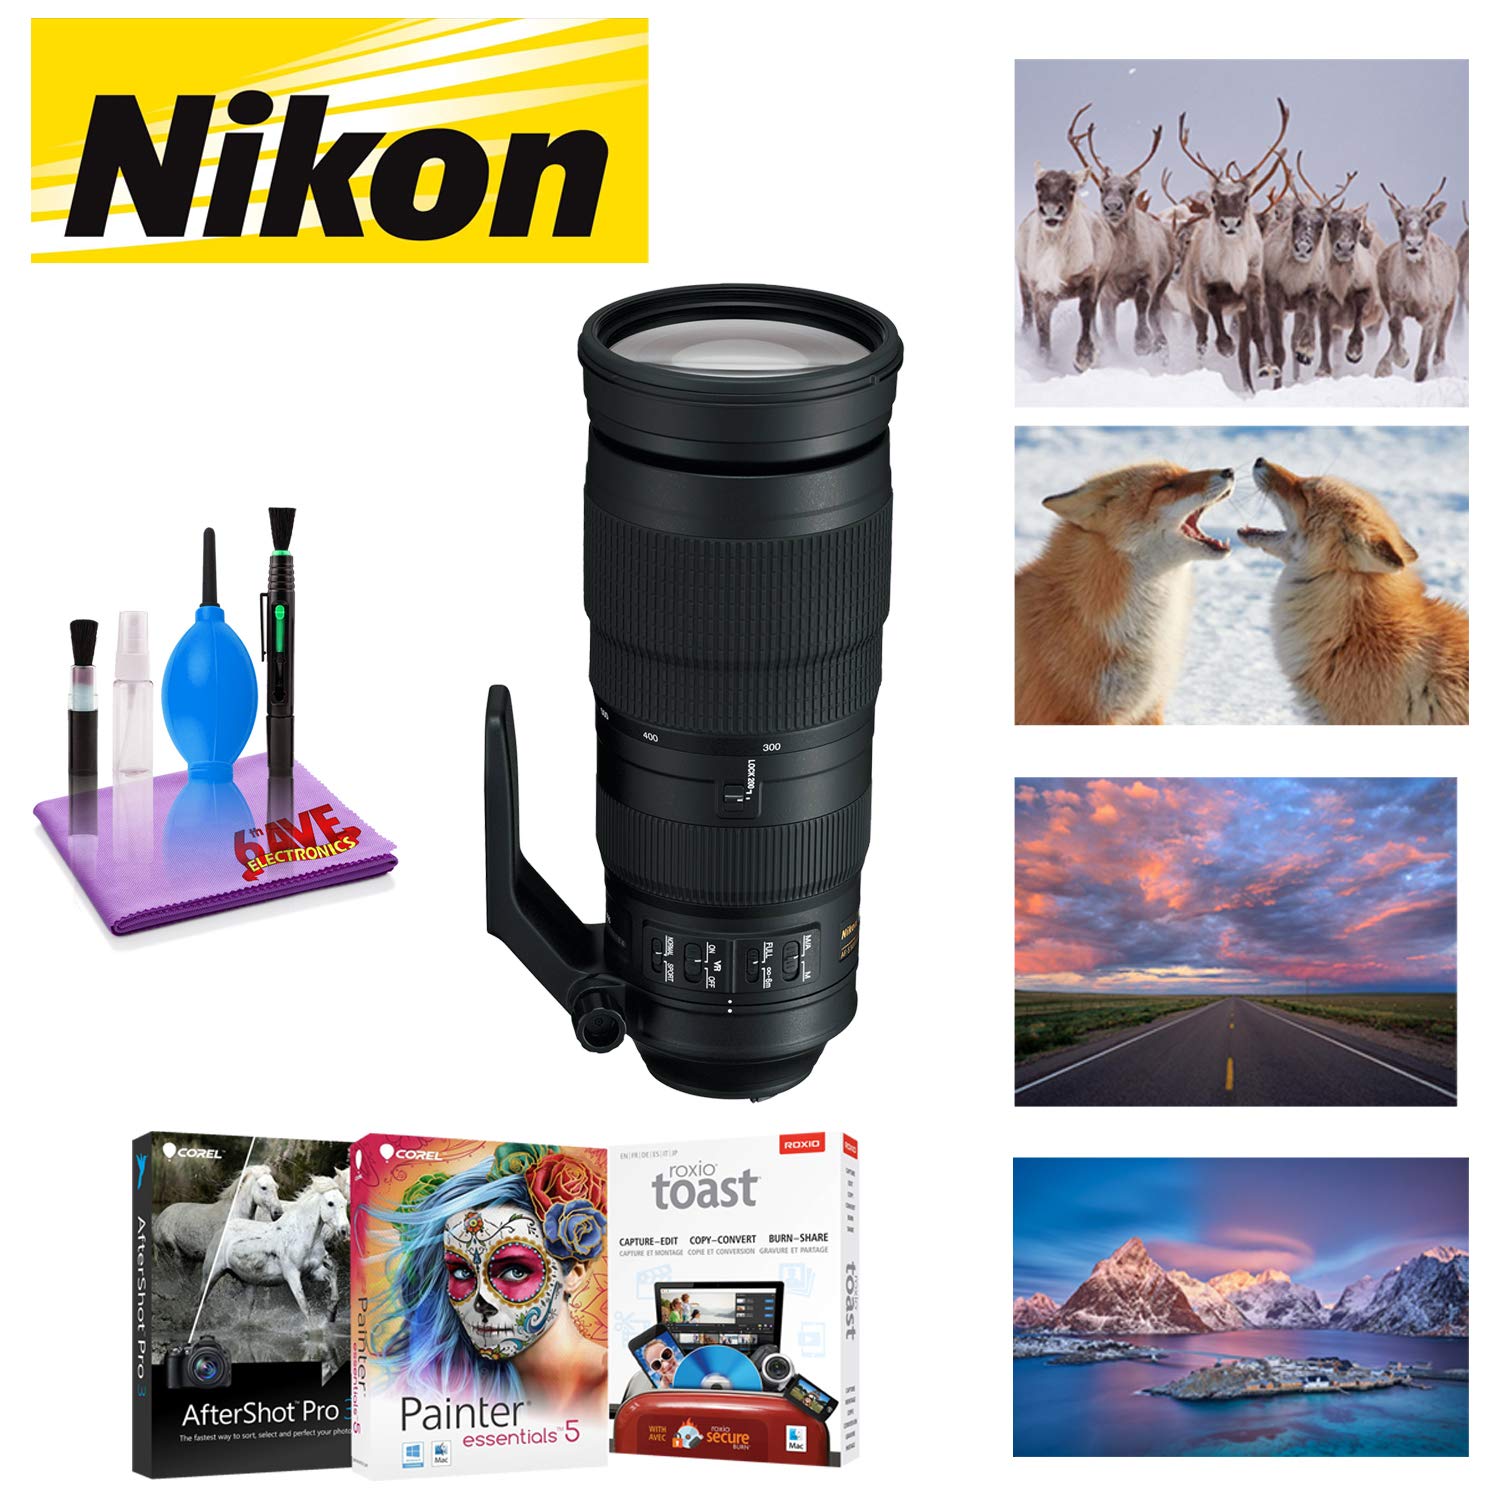 Nikon AF-S NIKKOR 200-500mm f/5.6E ED VR Lens with Corel Mac Photo Essentials Software Kit - Includes Corel AfterShot, C